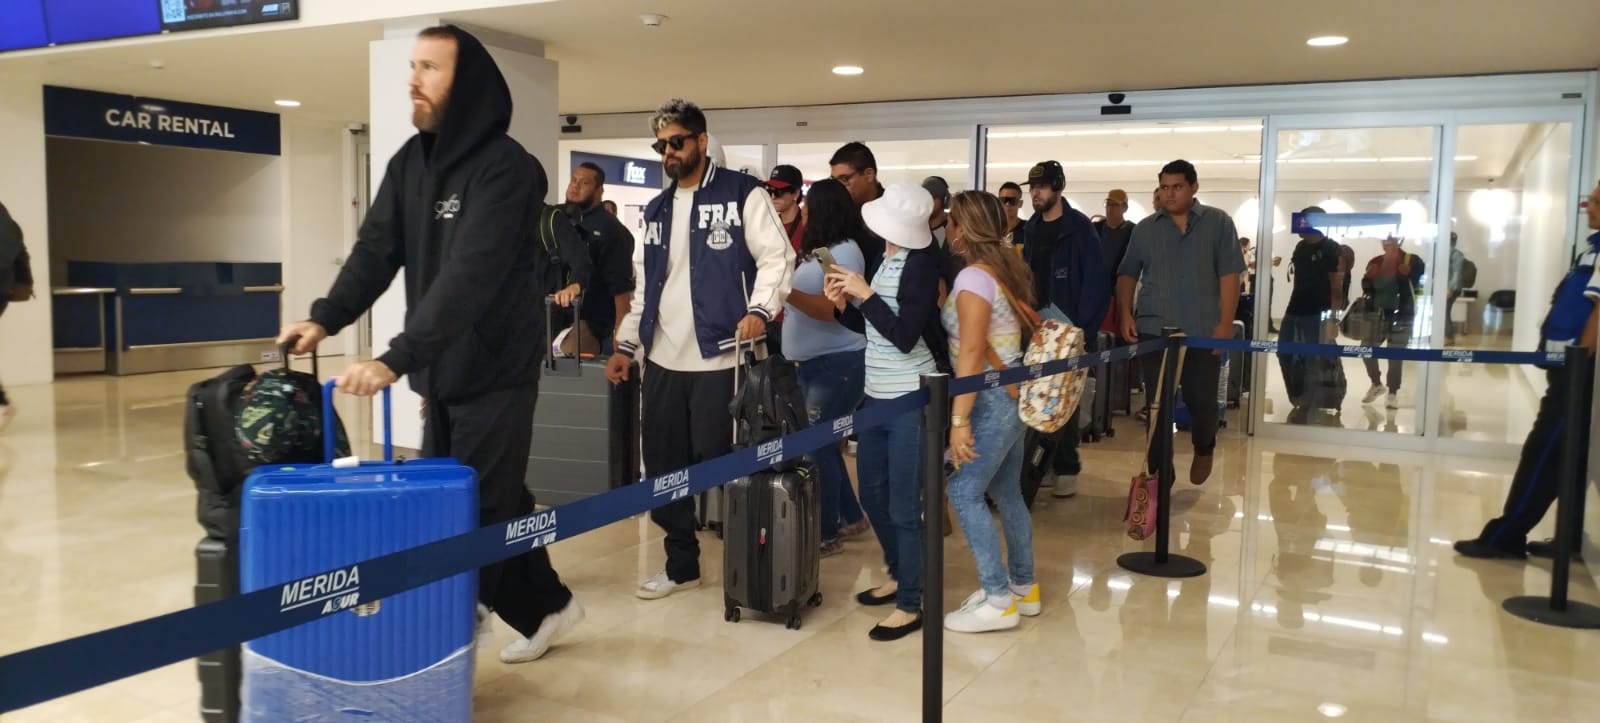 CNCO fue recibido por fans en el aeropuerto de Mérida